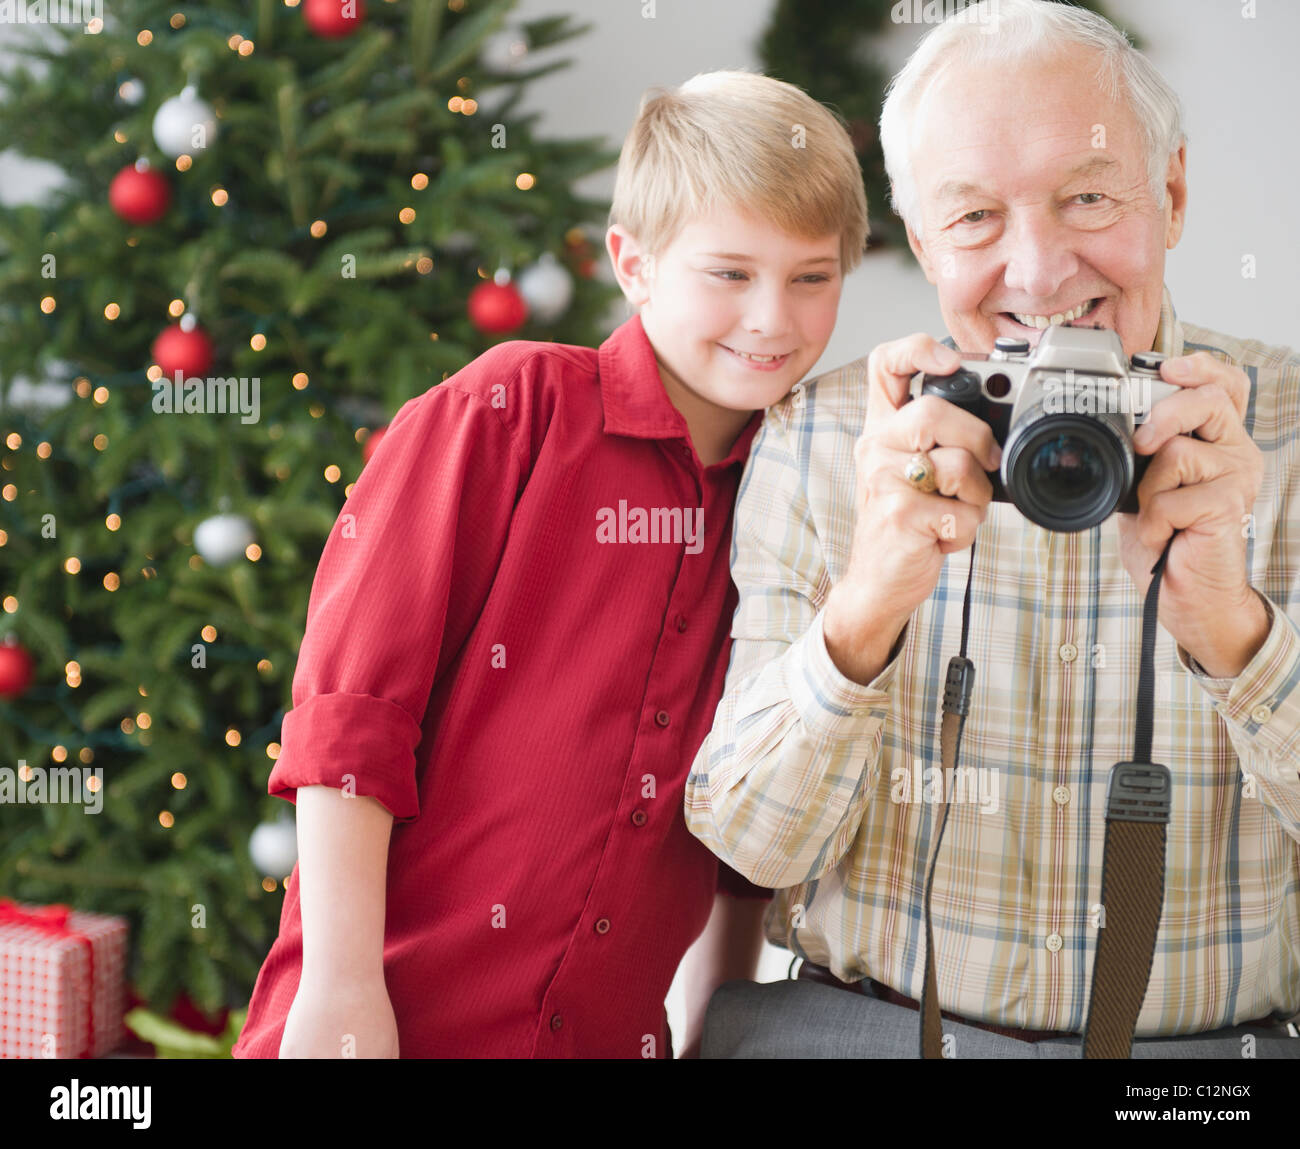 USA, New Jersey, Jersey City, grand-père et petit-fils (8-9 ans) de prendre photo, arbre de Noël en arrière-plan Banque D'Images